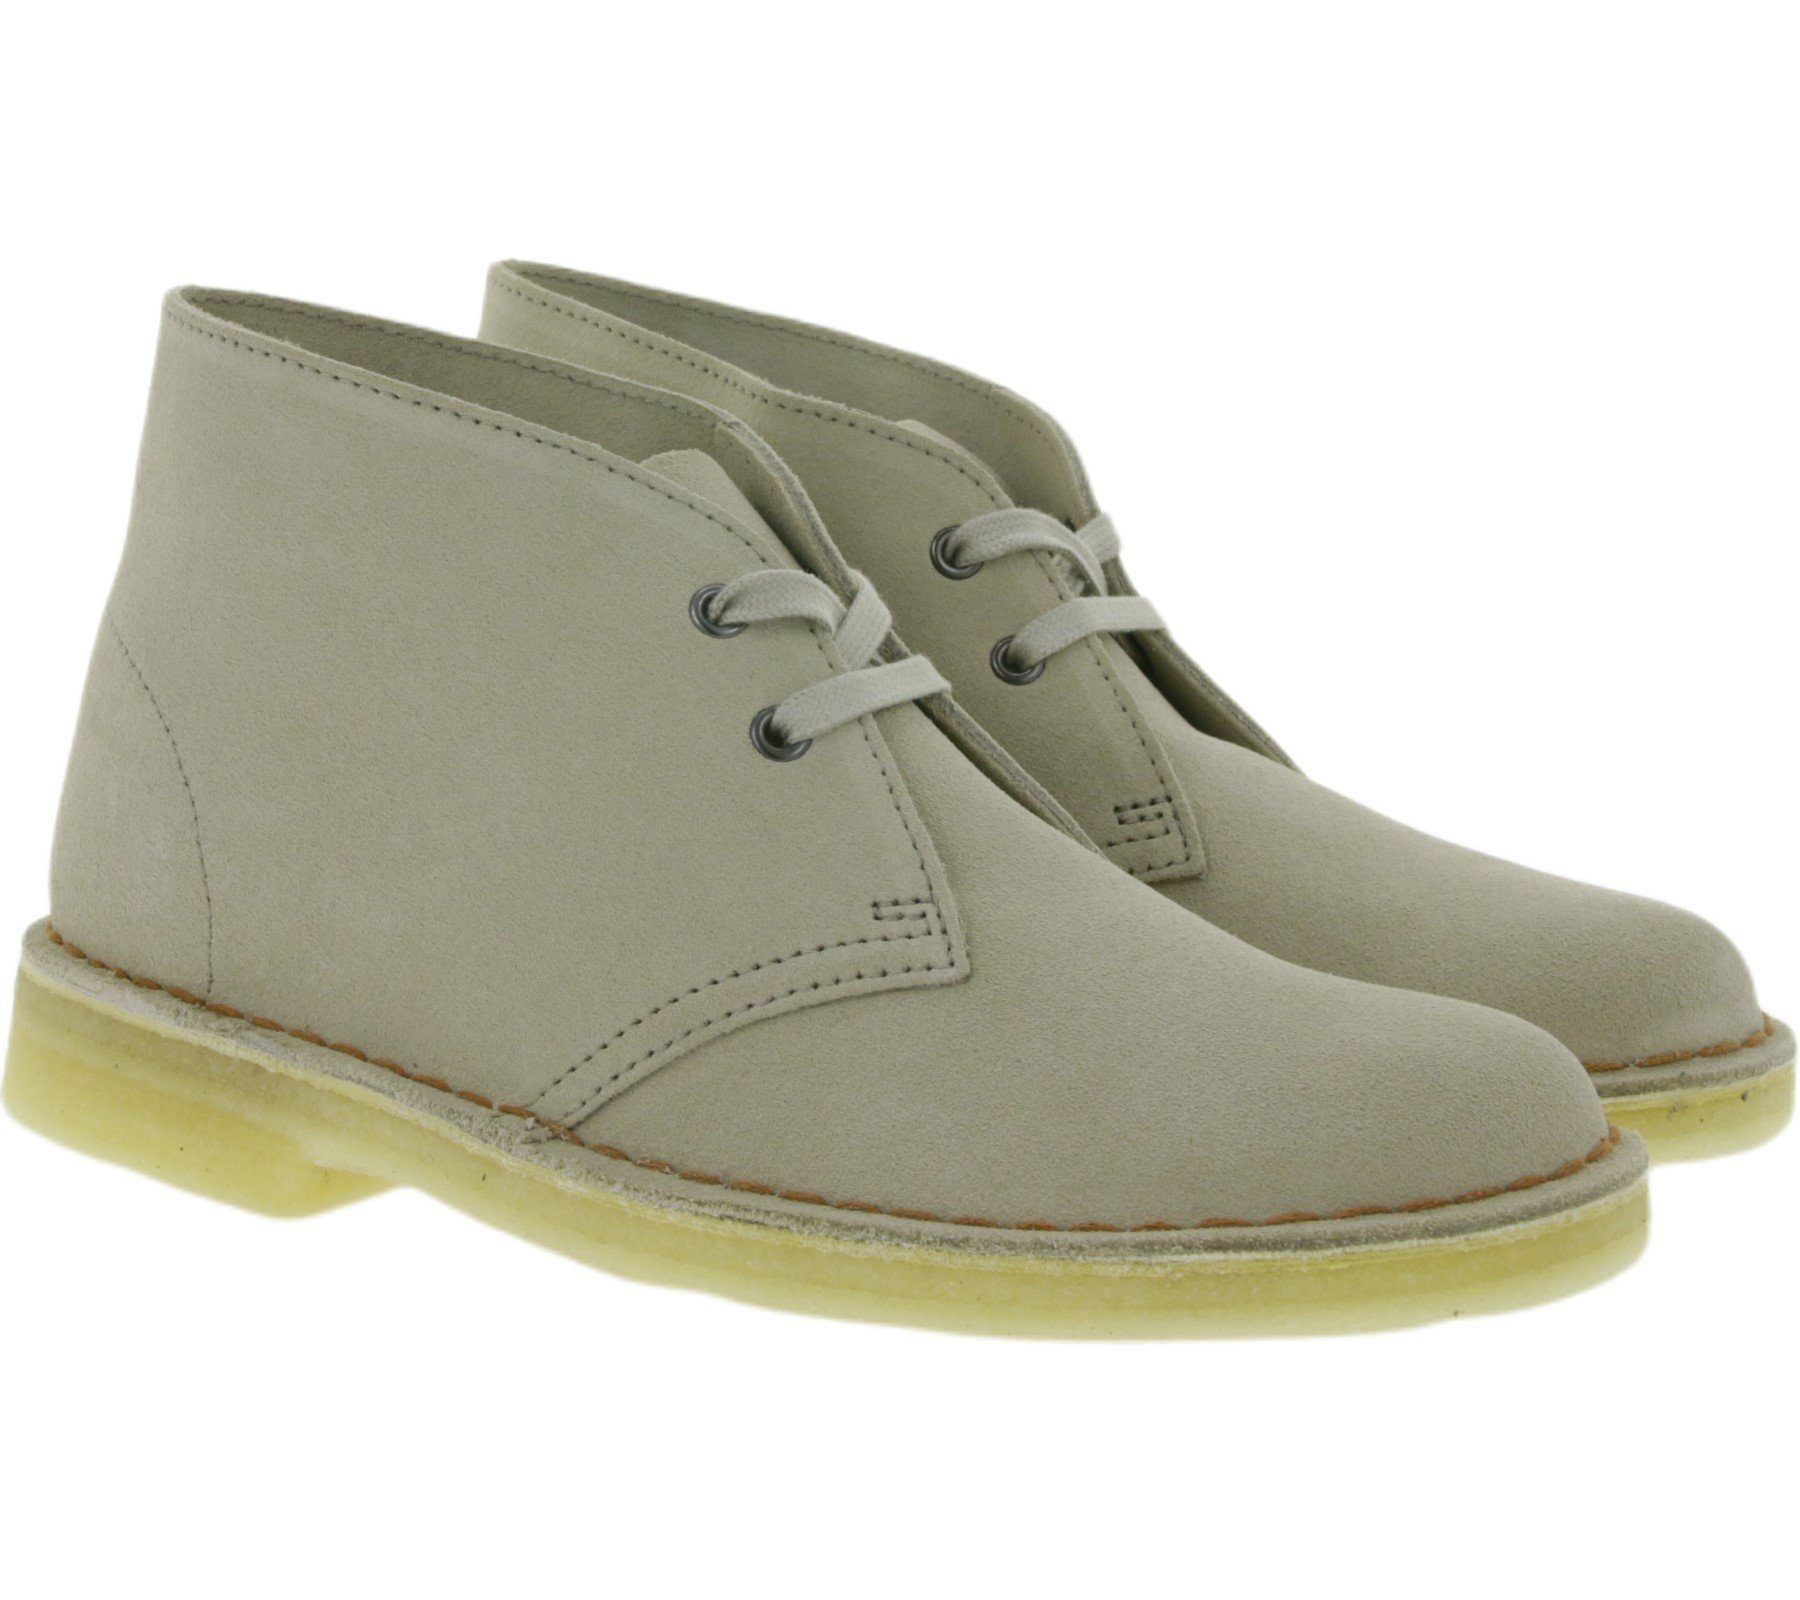 Clarks »Clarks Originals Damen Boots schicke Veloursleder-Stiefeletten  Desert Boot Stiefel Beige« Stiefel online kaufen | OTTO